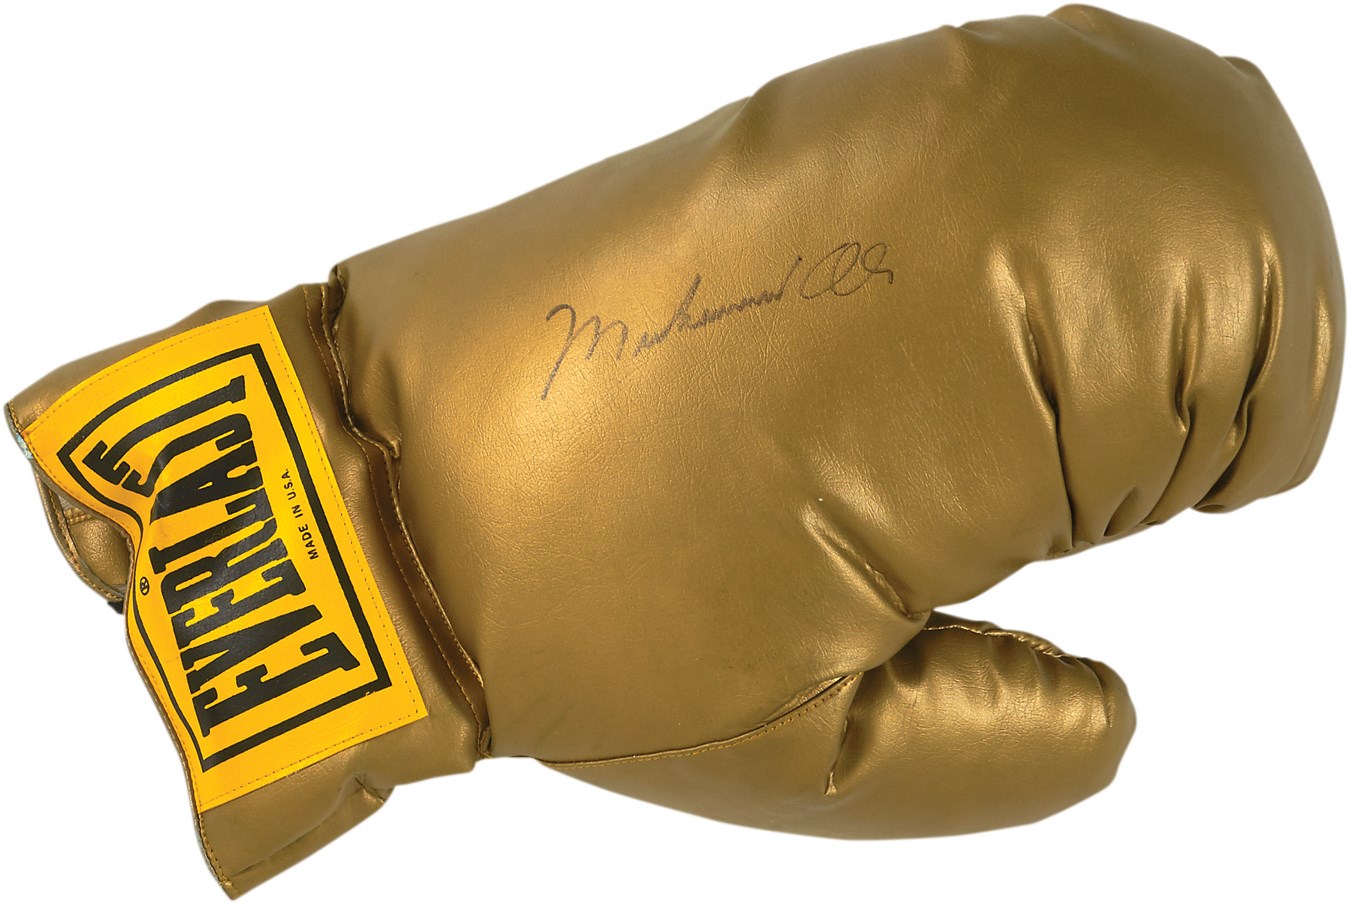 Muhammad Ali & Boxing - Muhammad Ali Large Signed Everlast Glove